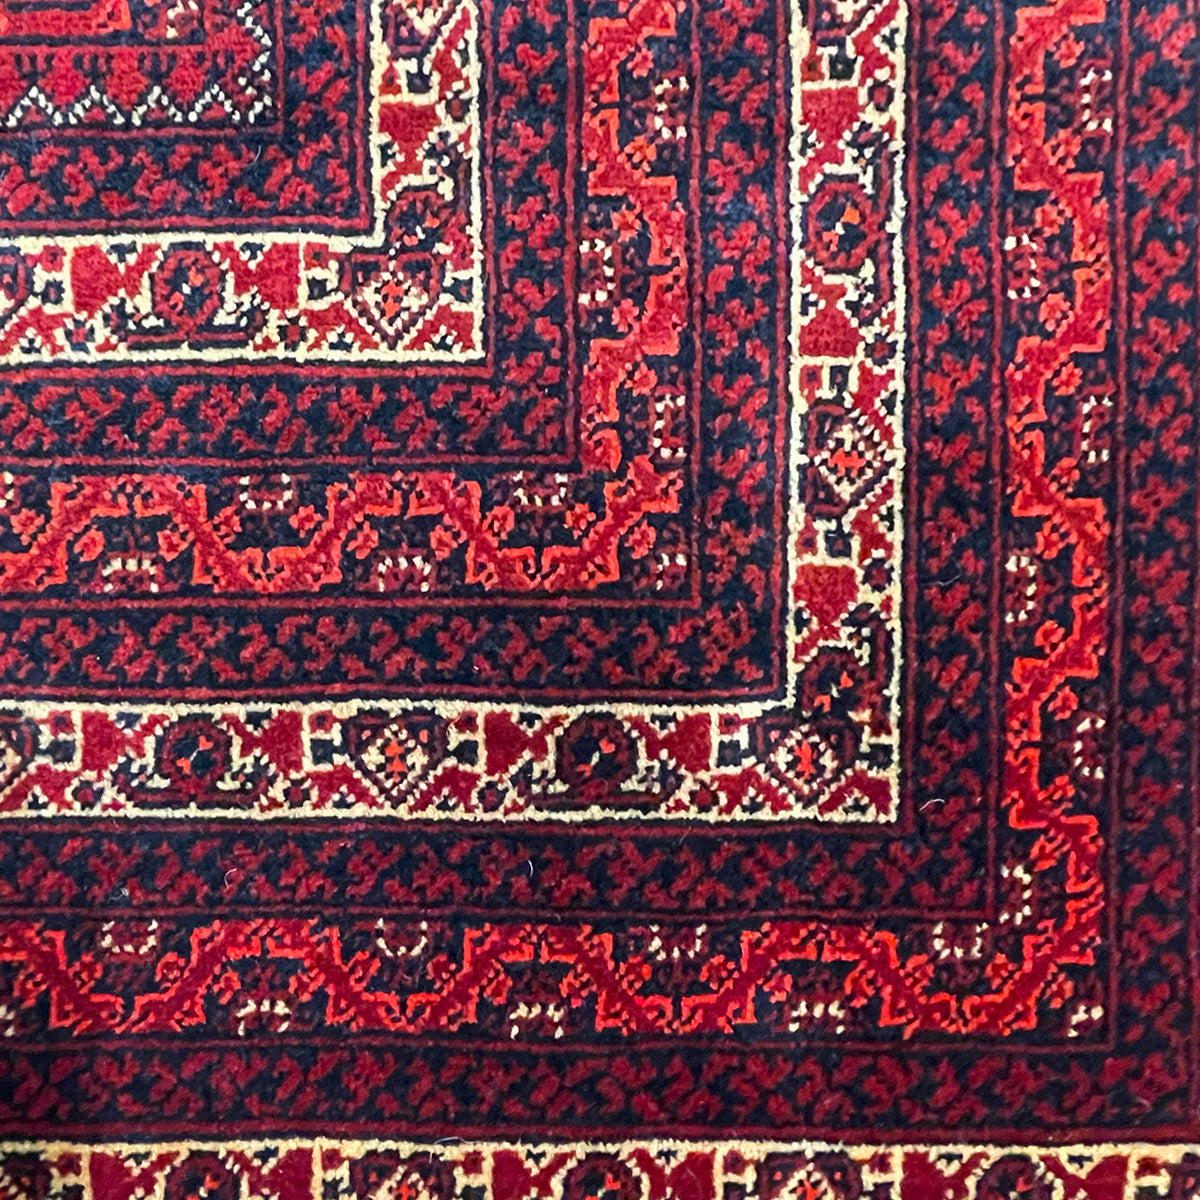 שטיח אפגני באשיר 00 צבעוני 290*197